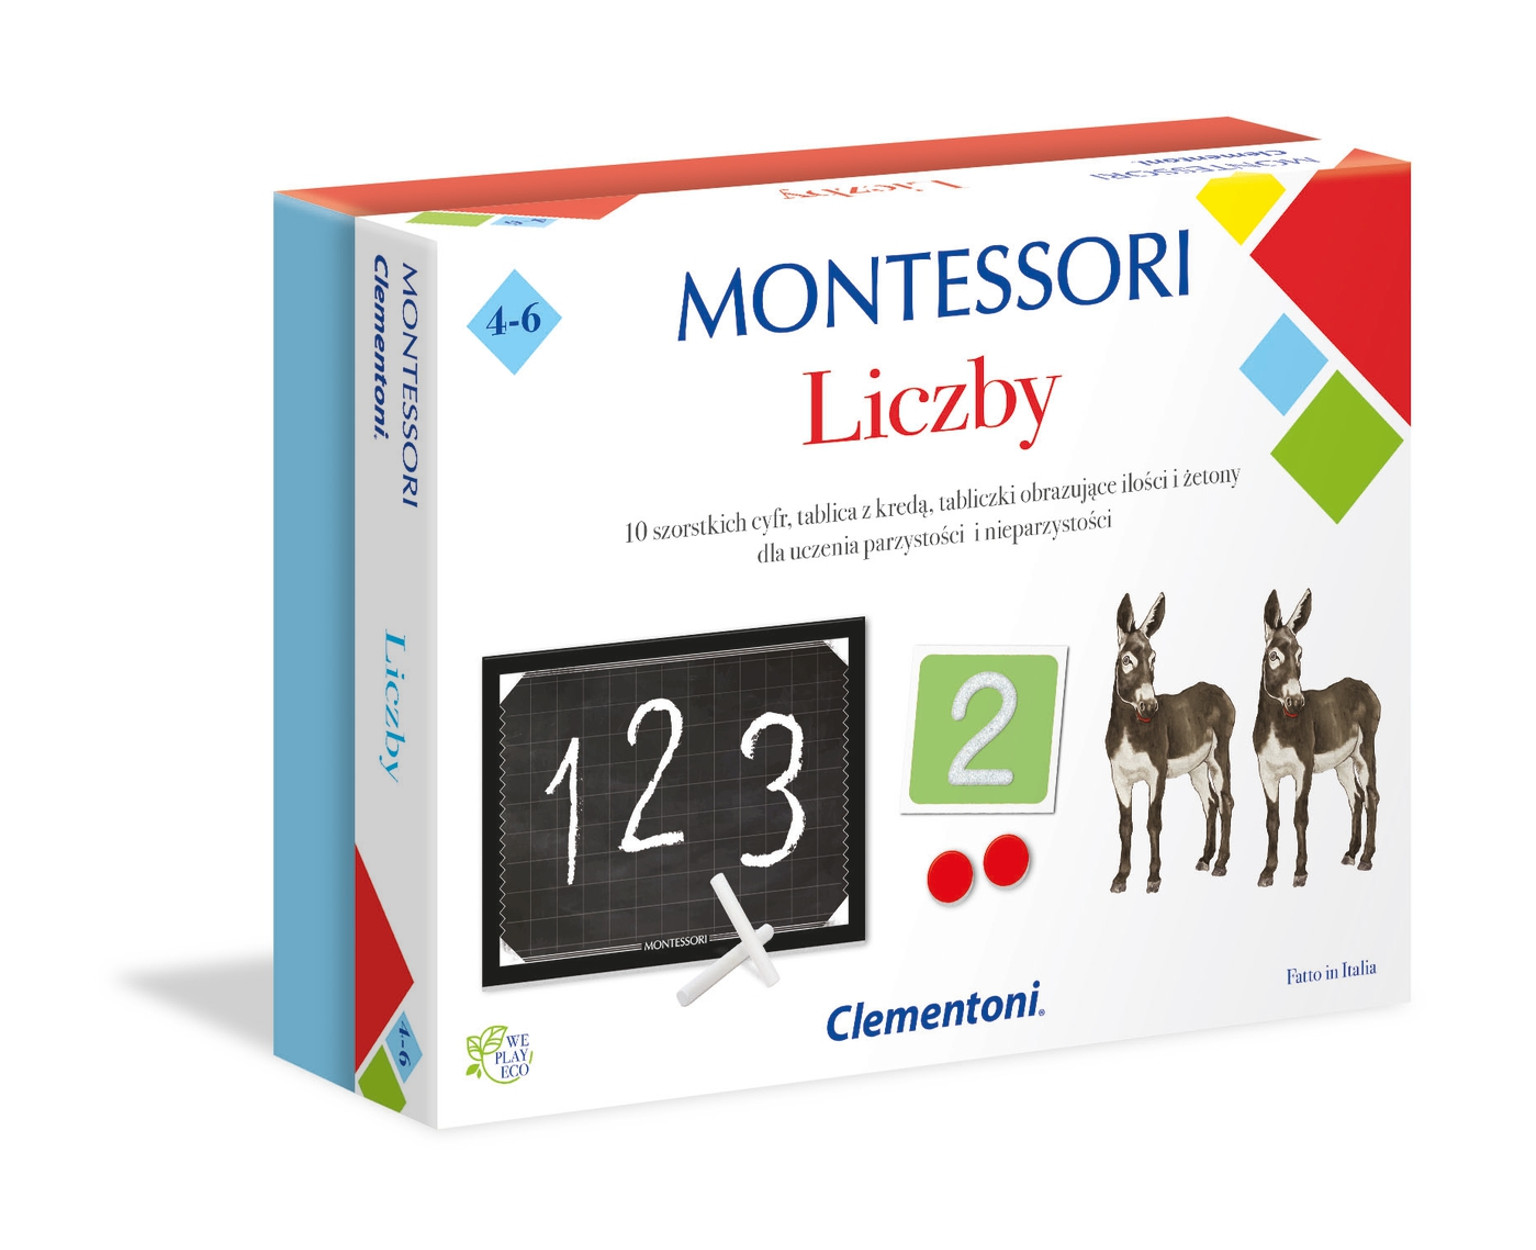 Montessori Liczby